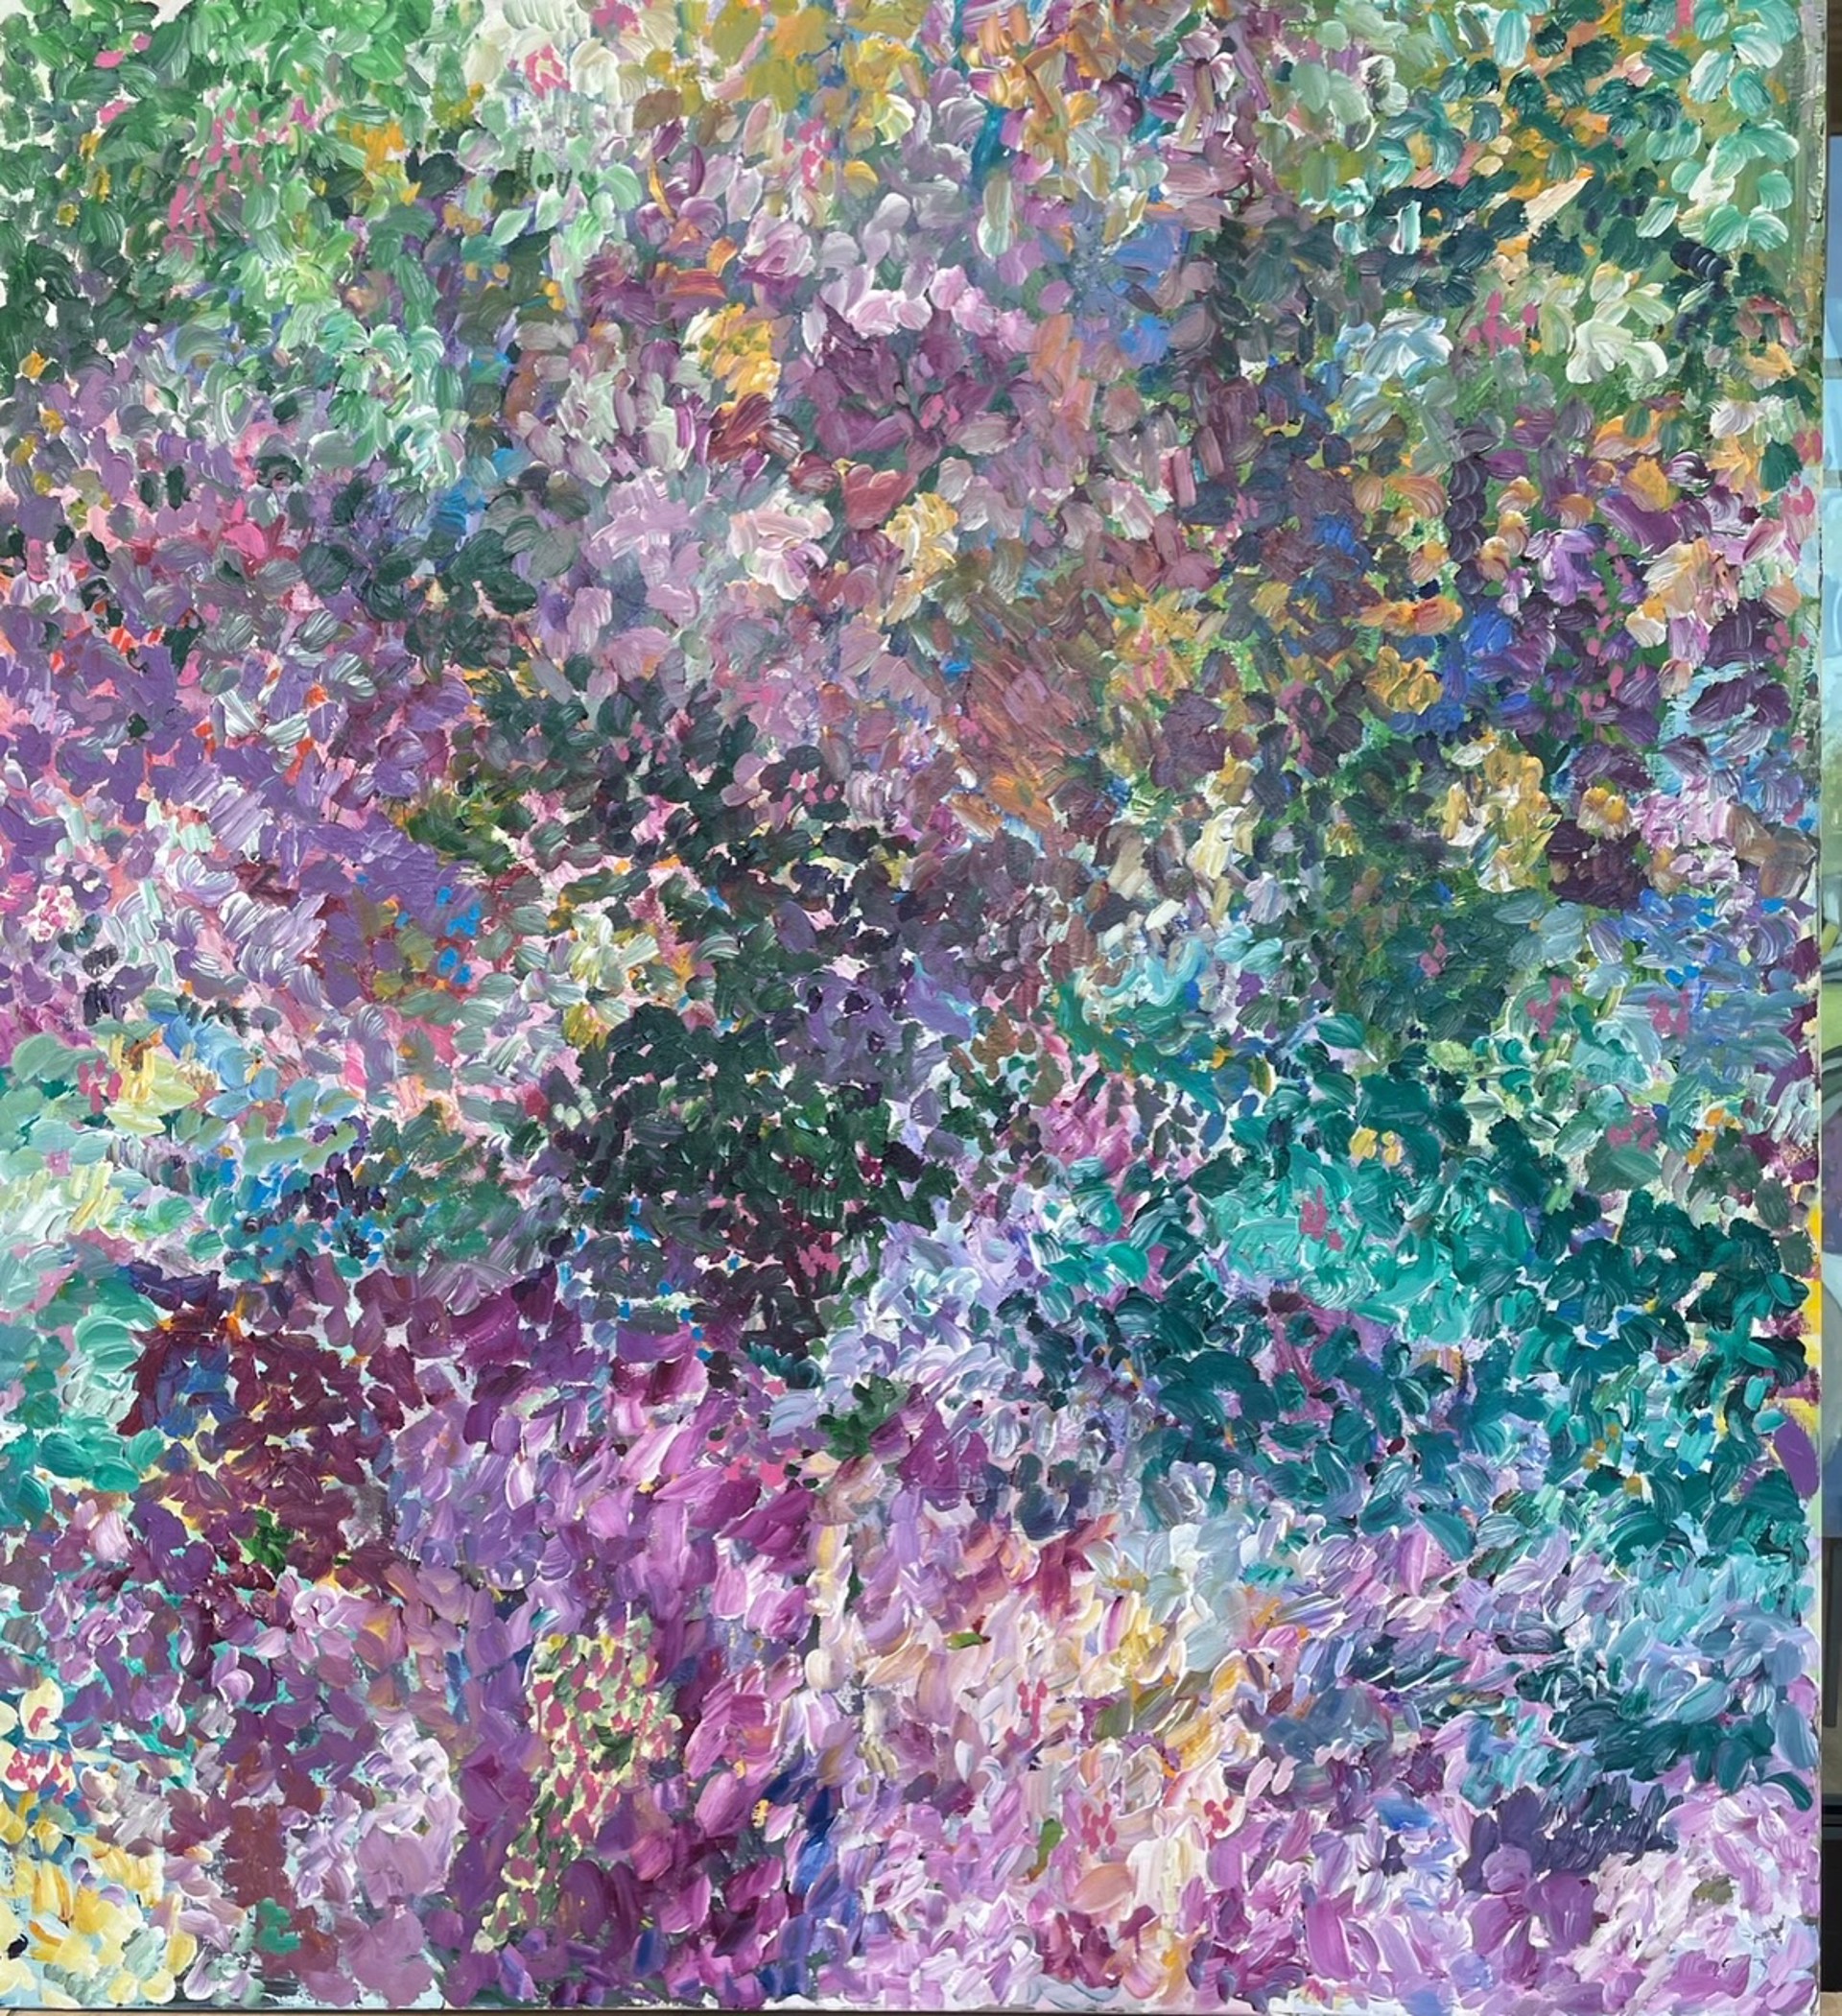 Le Jardin du Monet by Jozef Batko